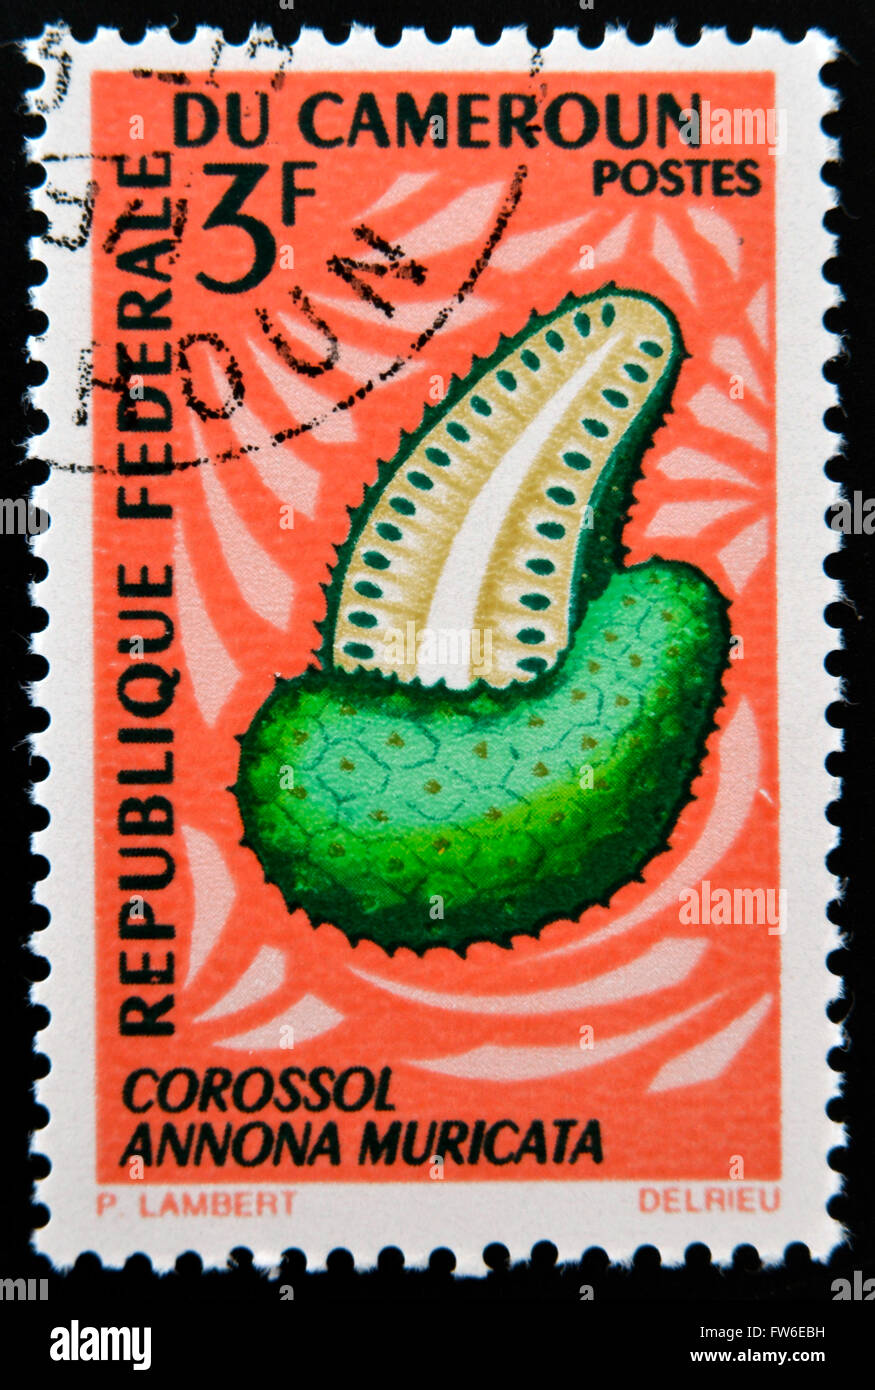 Kamerun - CIRCA 1967: Eine Briefmarke gedruckt in Kamerun zeigt Annona Muricata (Corossol), circa 1967 Stockfoto